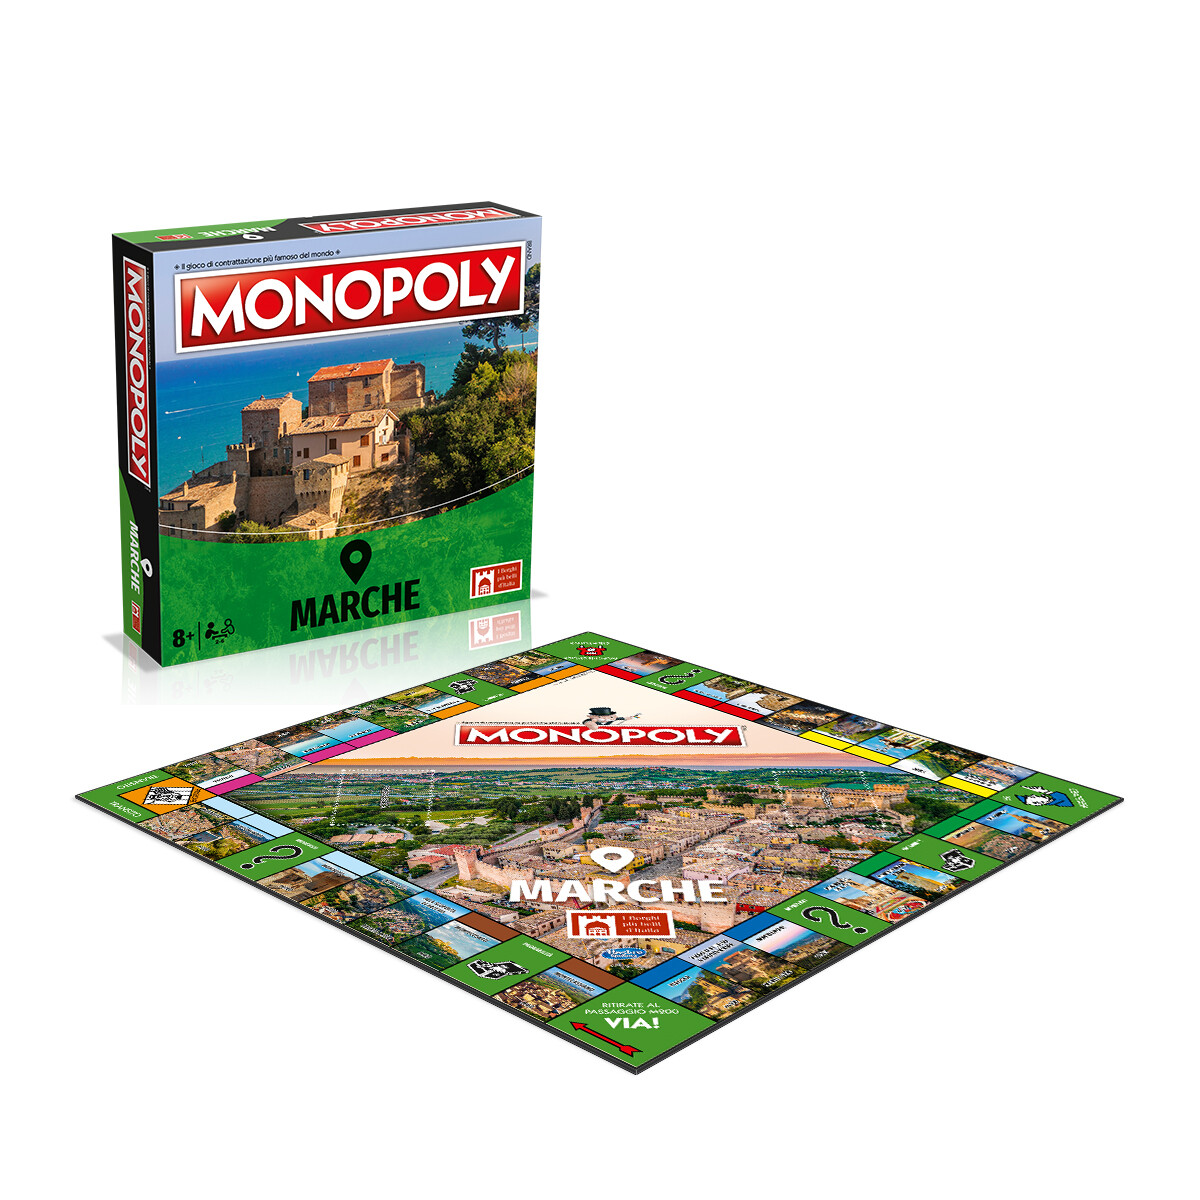 Monopoly - i borghi più belli d'italia - edizione marche - MONOPOLY